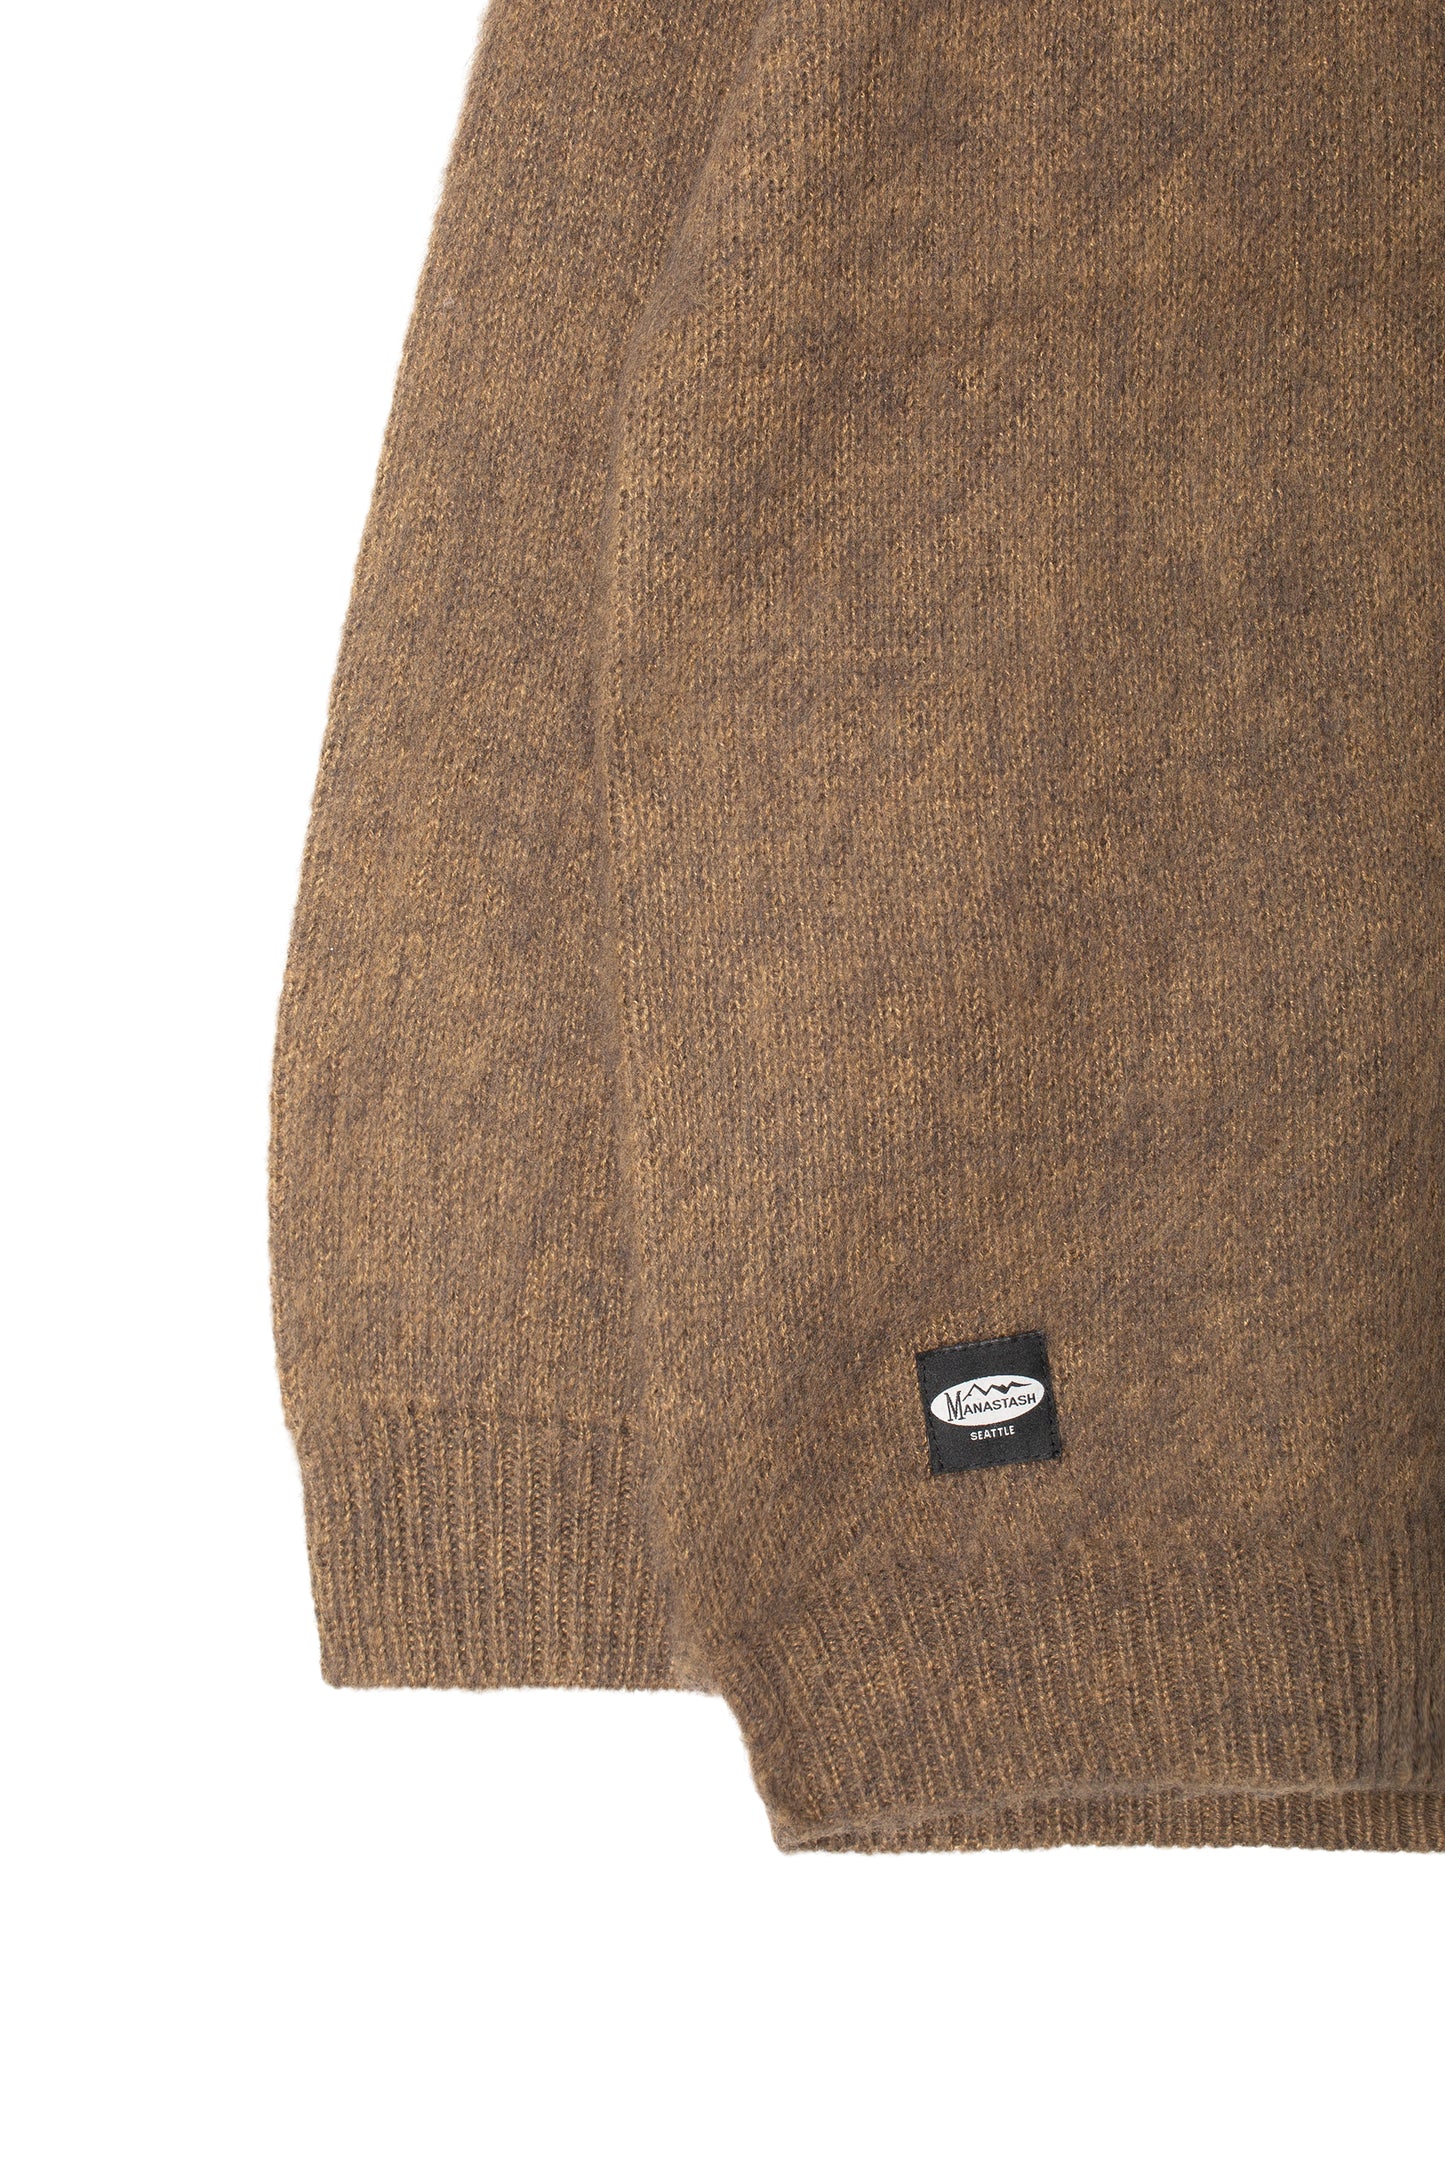 Aberdeen Sweater (Mocca)